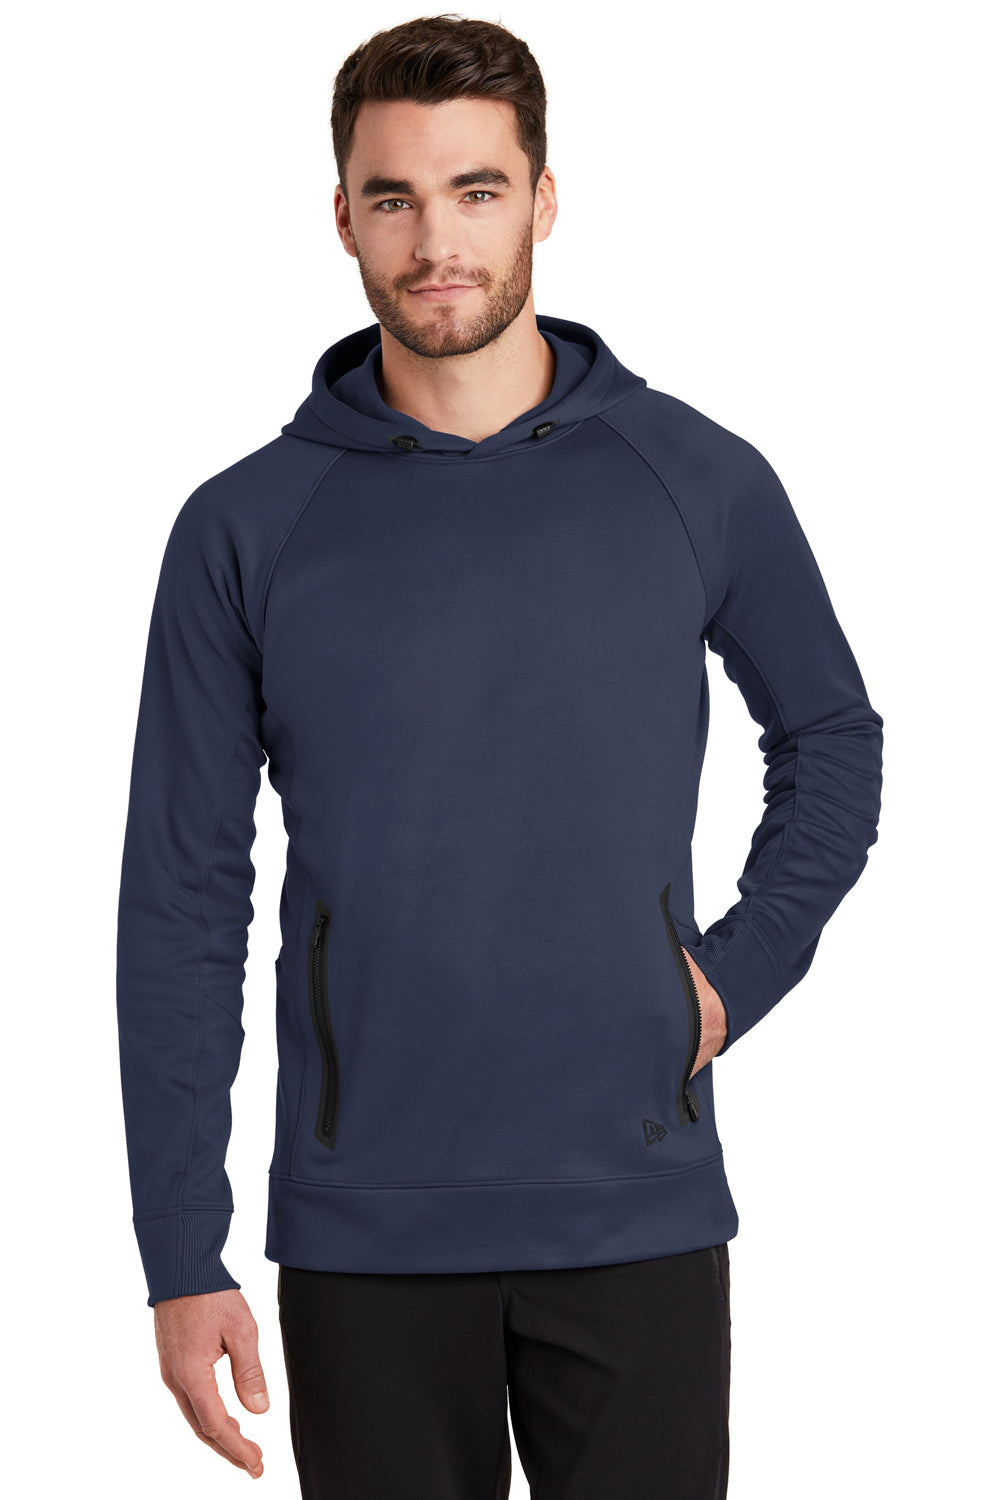 New Era NEA520 Mens Venue Fleece Hooded Sweatshirt Hoodie Navy Blue Front